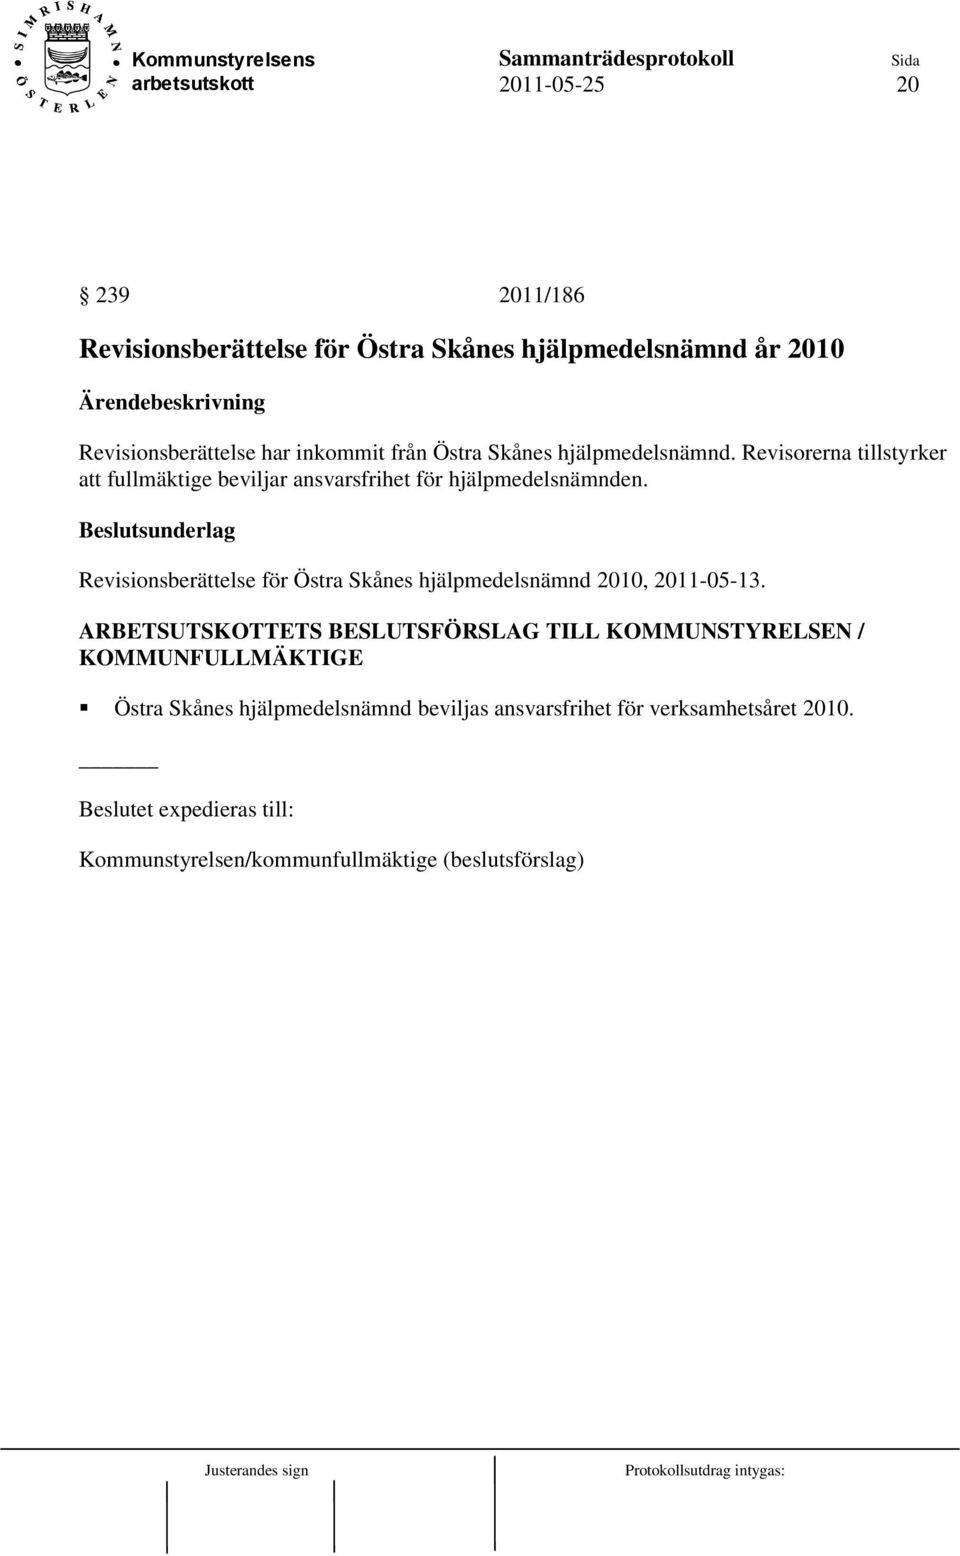 Revisionsberättelse för Östra Skånes hjälpmedelsnämnd 2010, 2011-05-13.